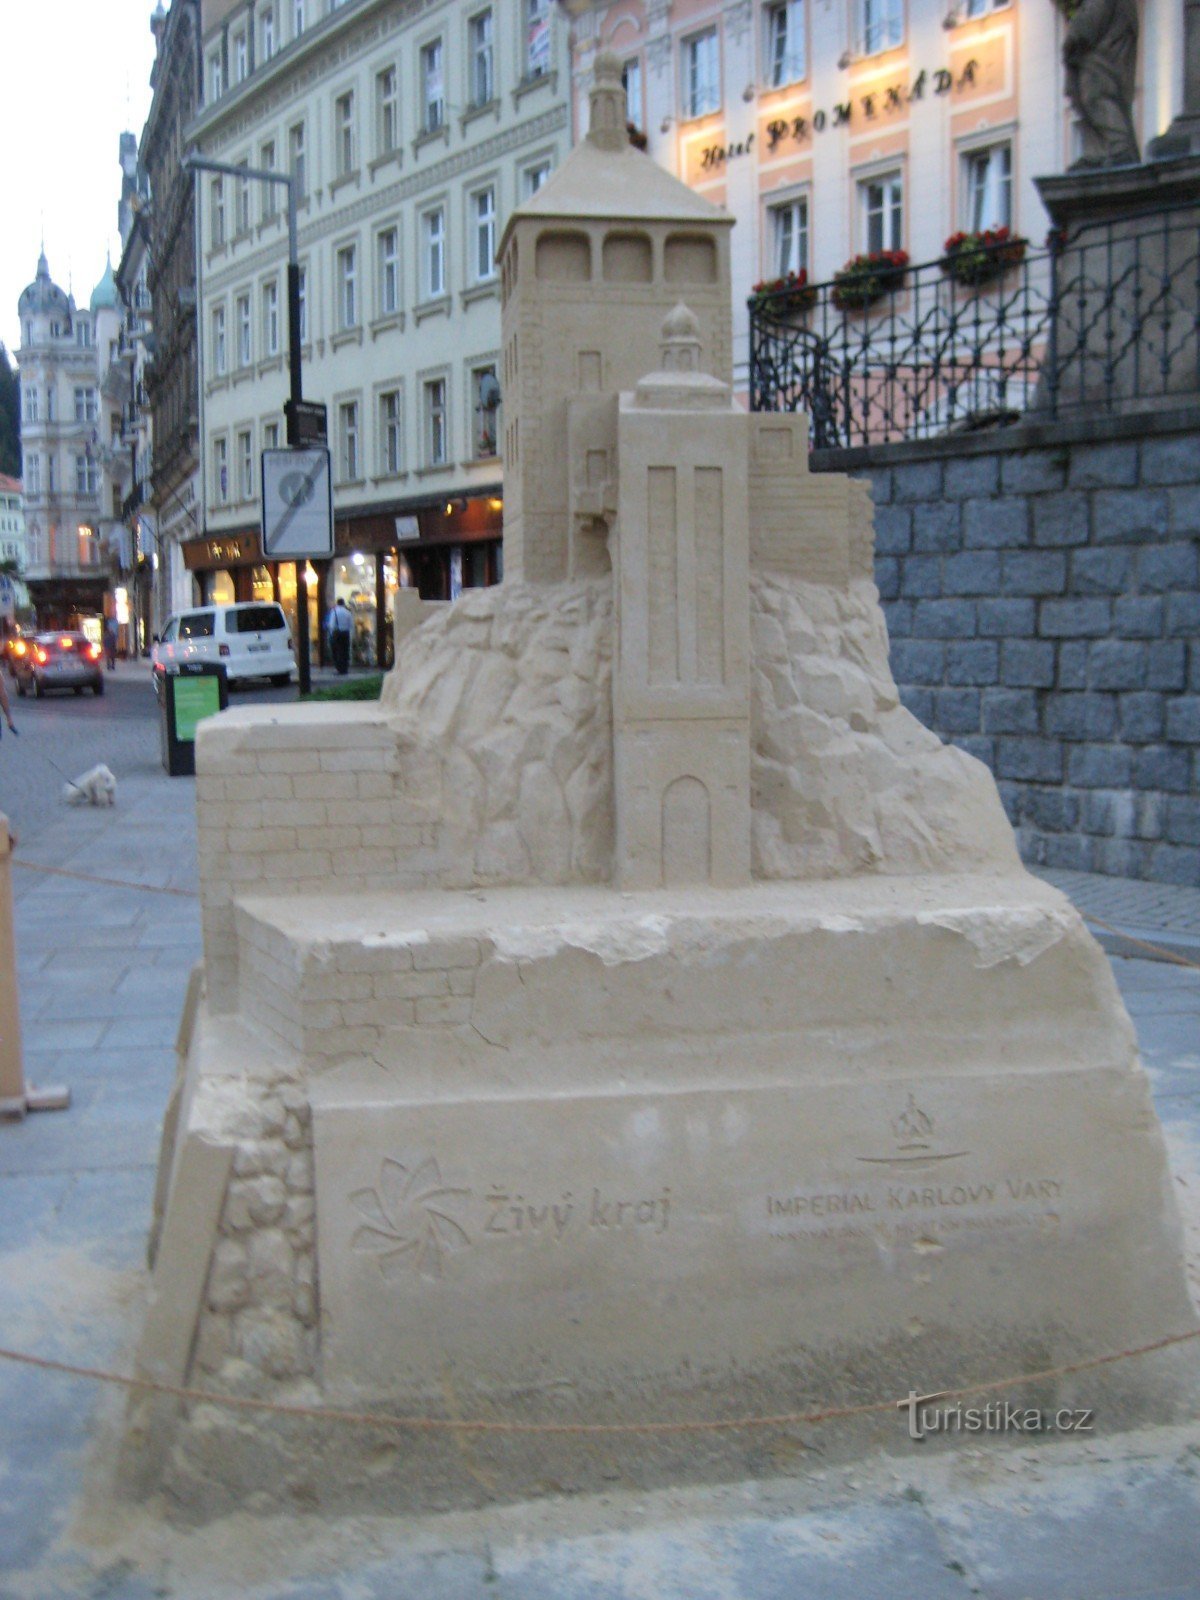 Sculpture de sable : Tour du château de Karlovy Vary